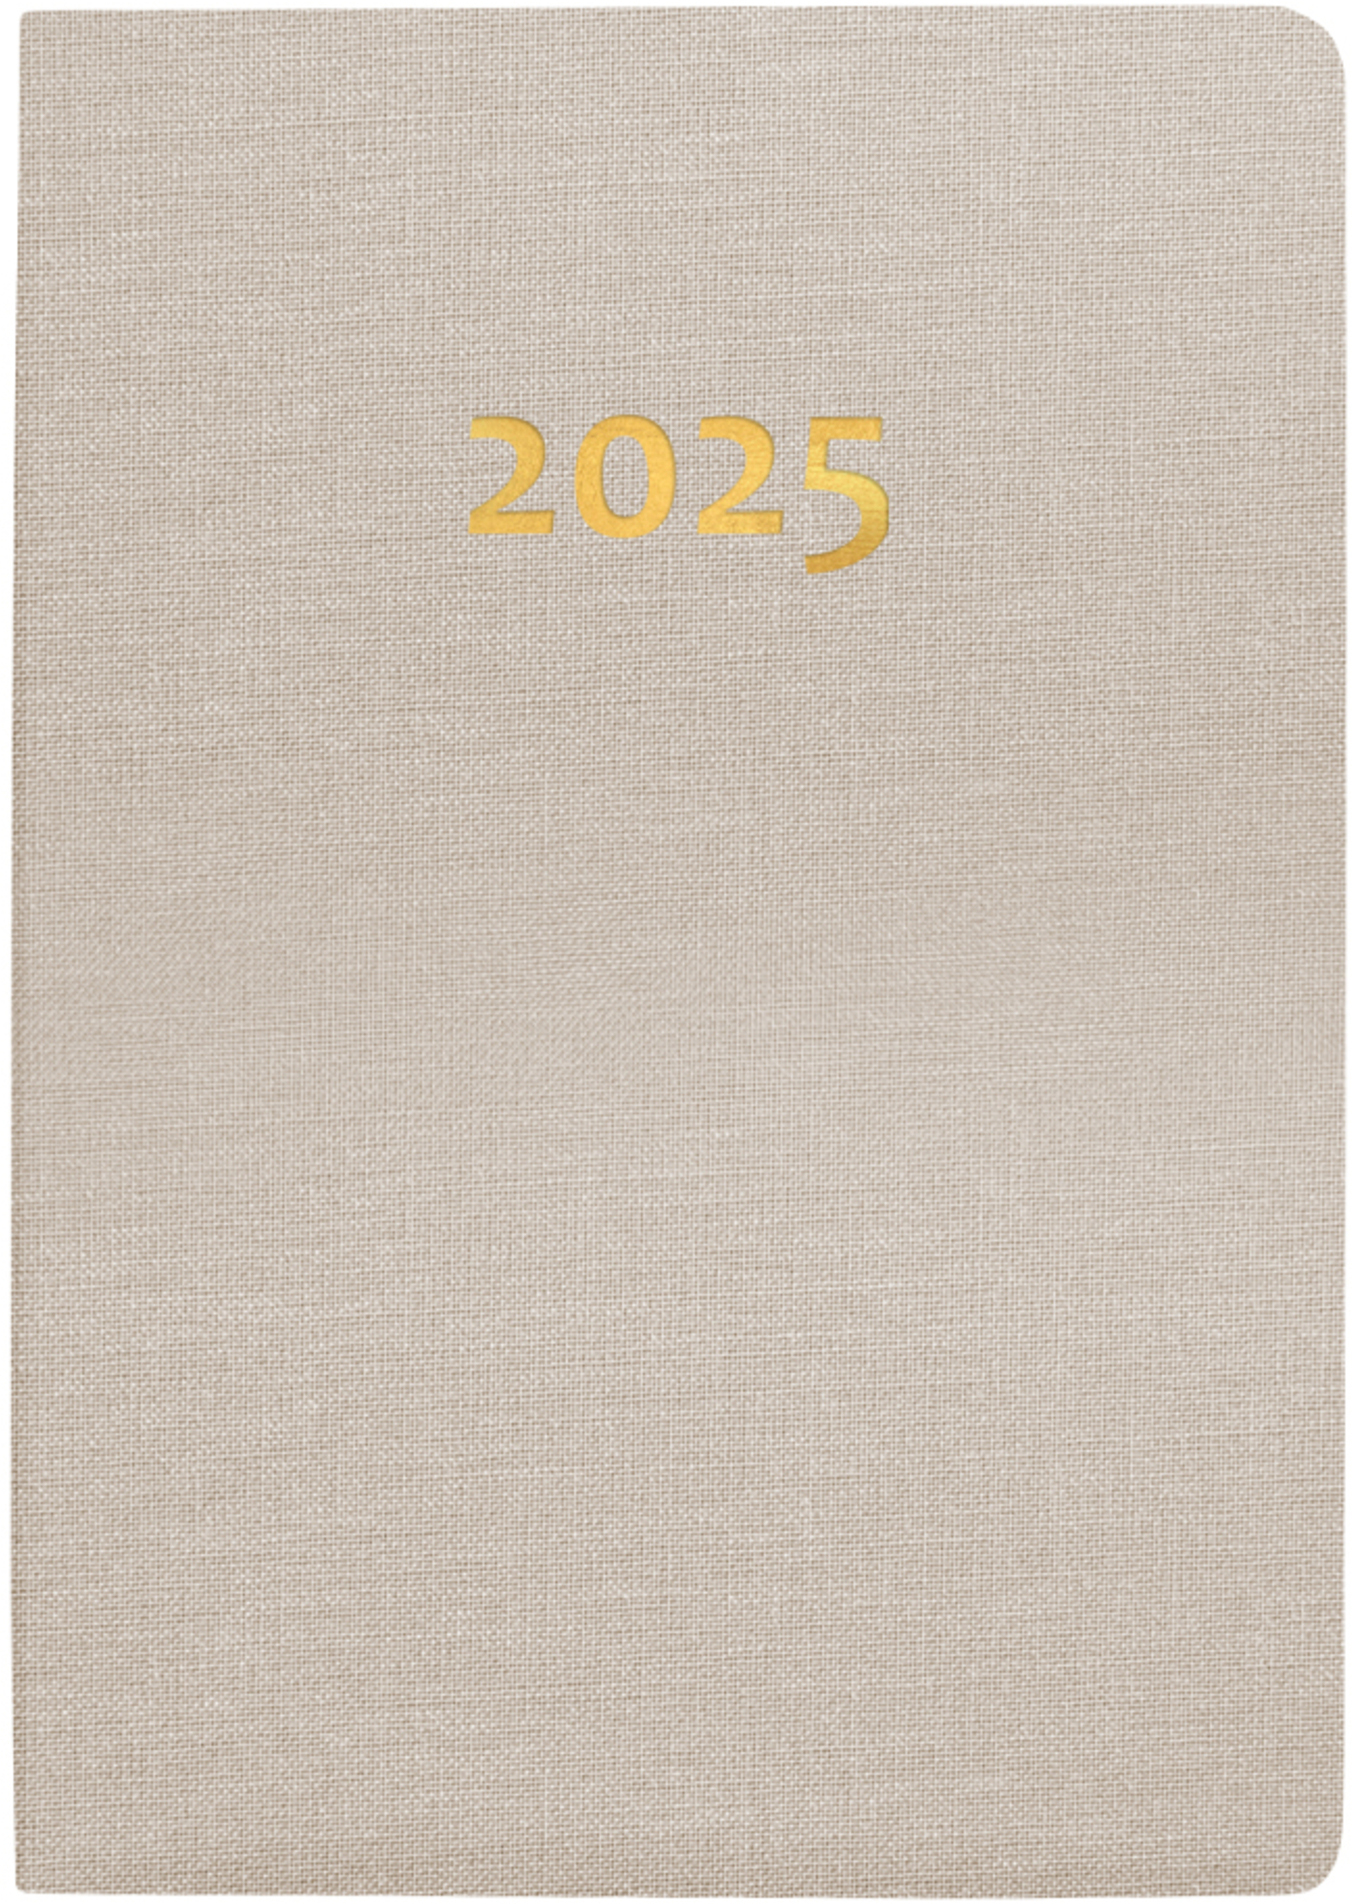 BIELLA Agenda Mittelformat 2025 822301100025 1S/2P beige ML 7.6x11cm